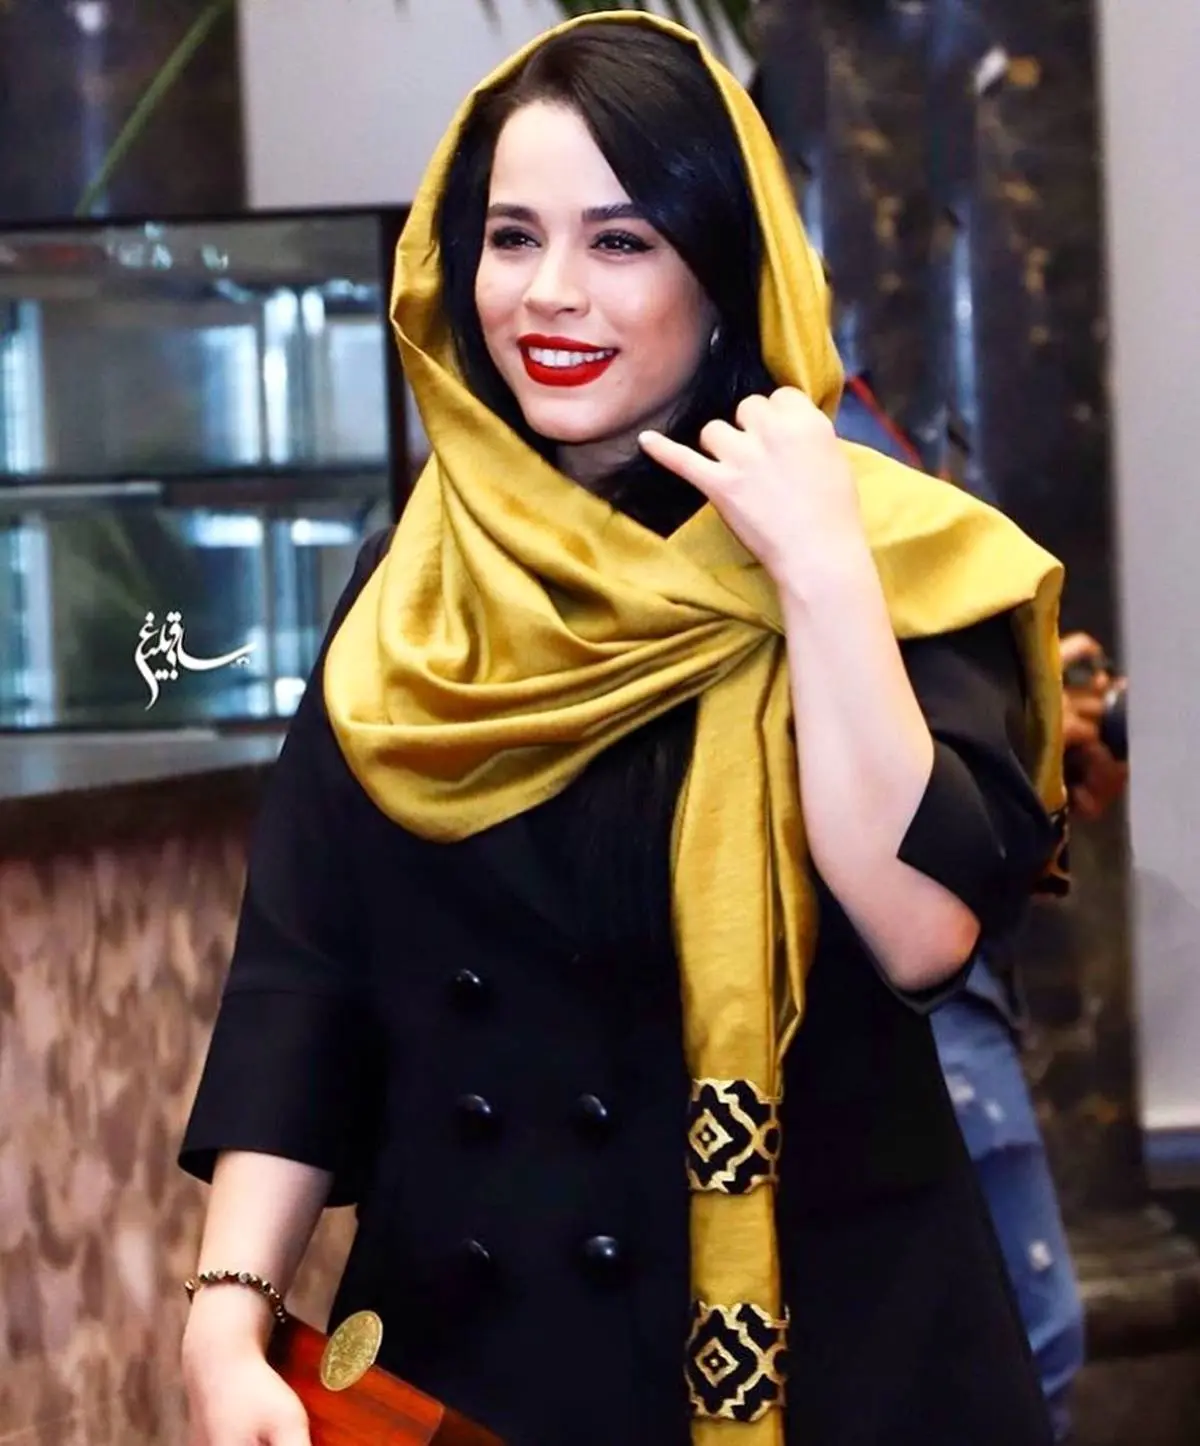 گریم متفاوت  ملیکا شریفی نیا در جشنواره فجر | محال است خانم بازیگر را در این عکس بشناسید 